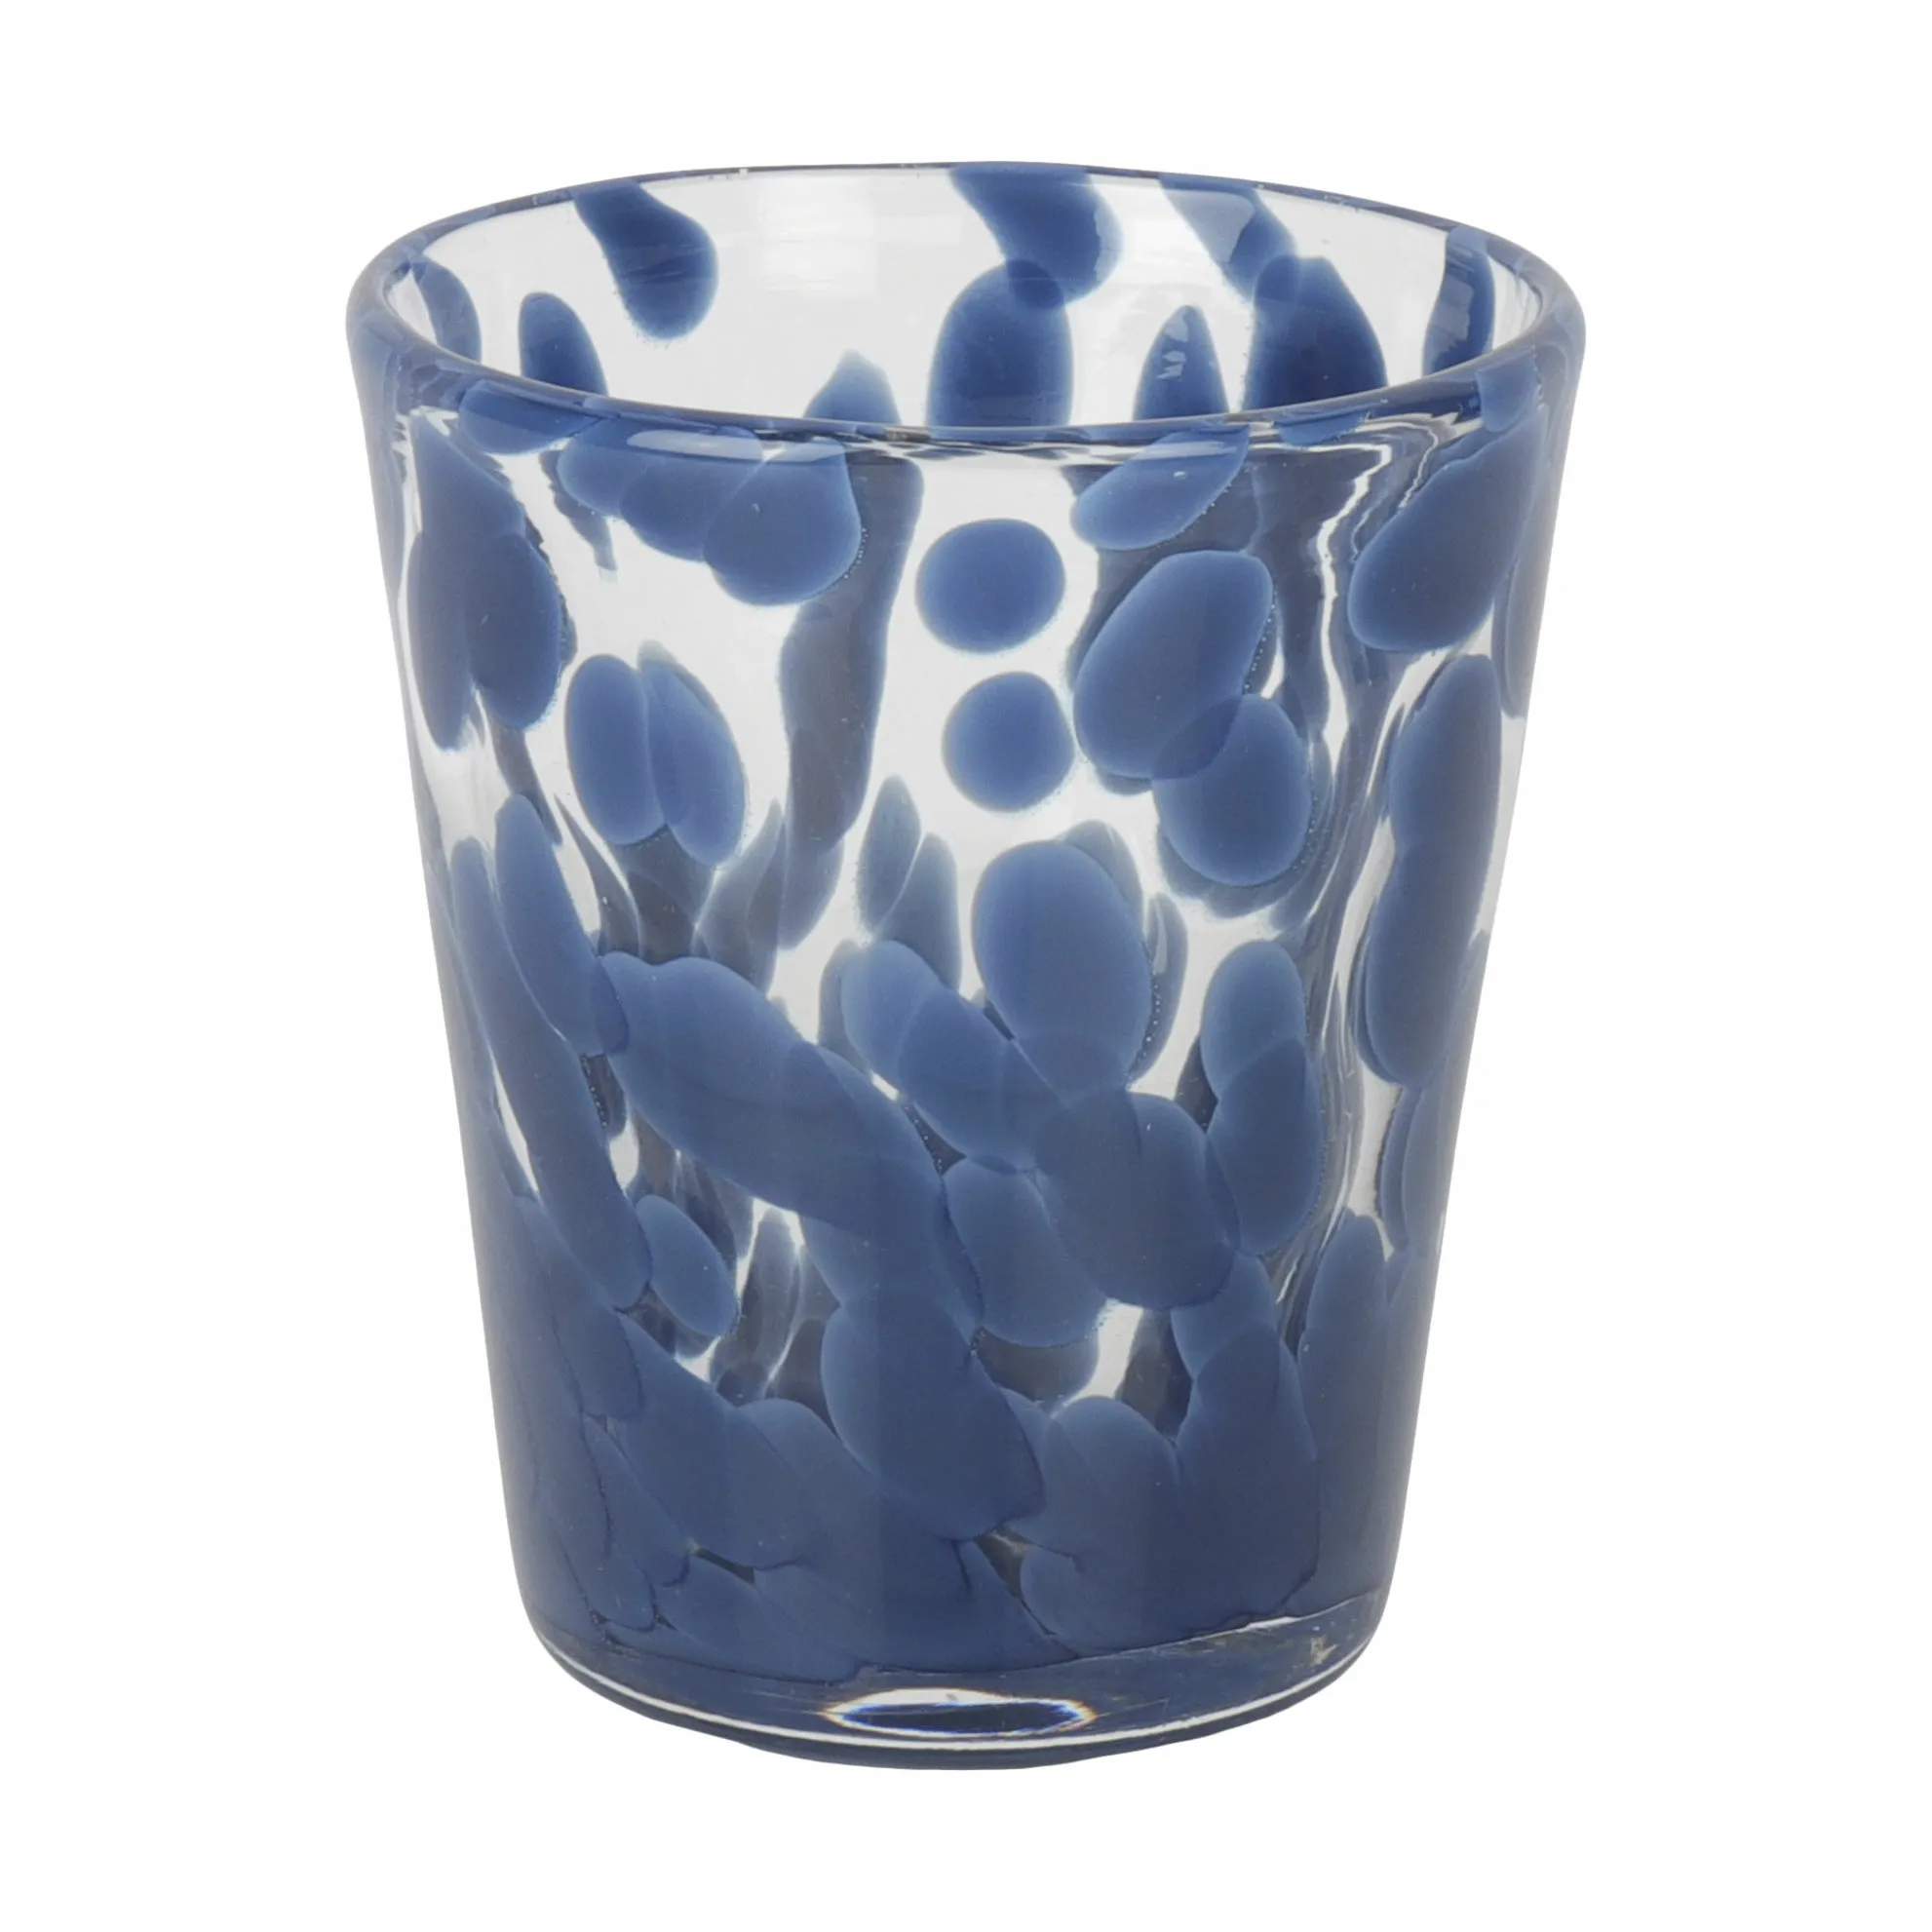 Vandglas confetti, mørkeblå, large